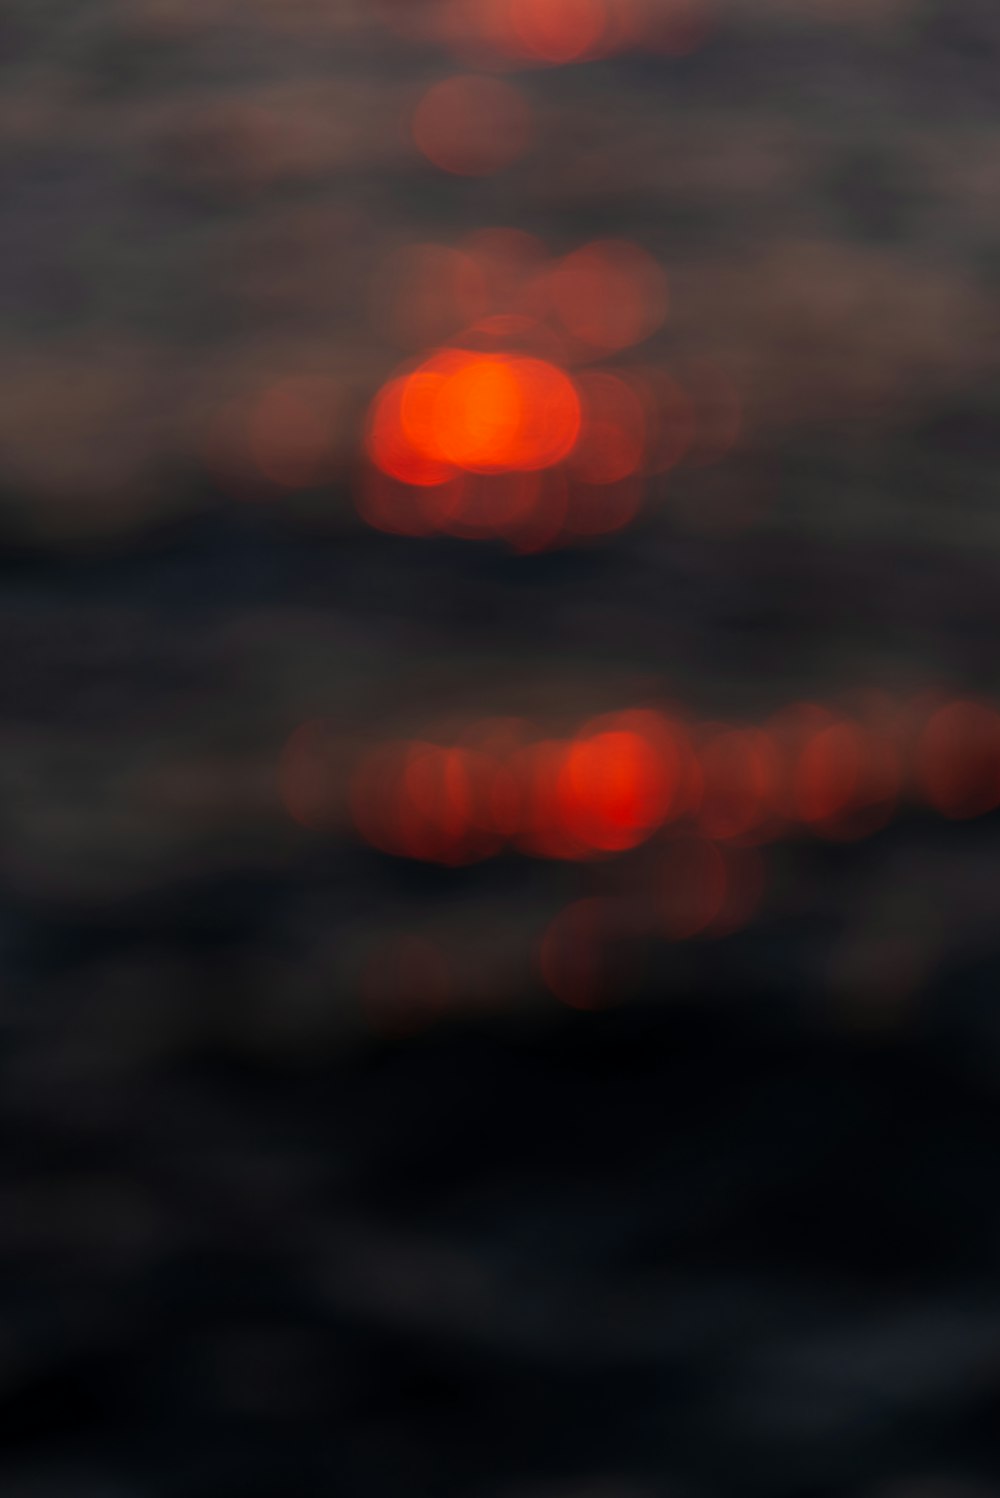 Una foto borrosa de la puesta de sol sobre el océano